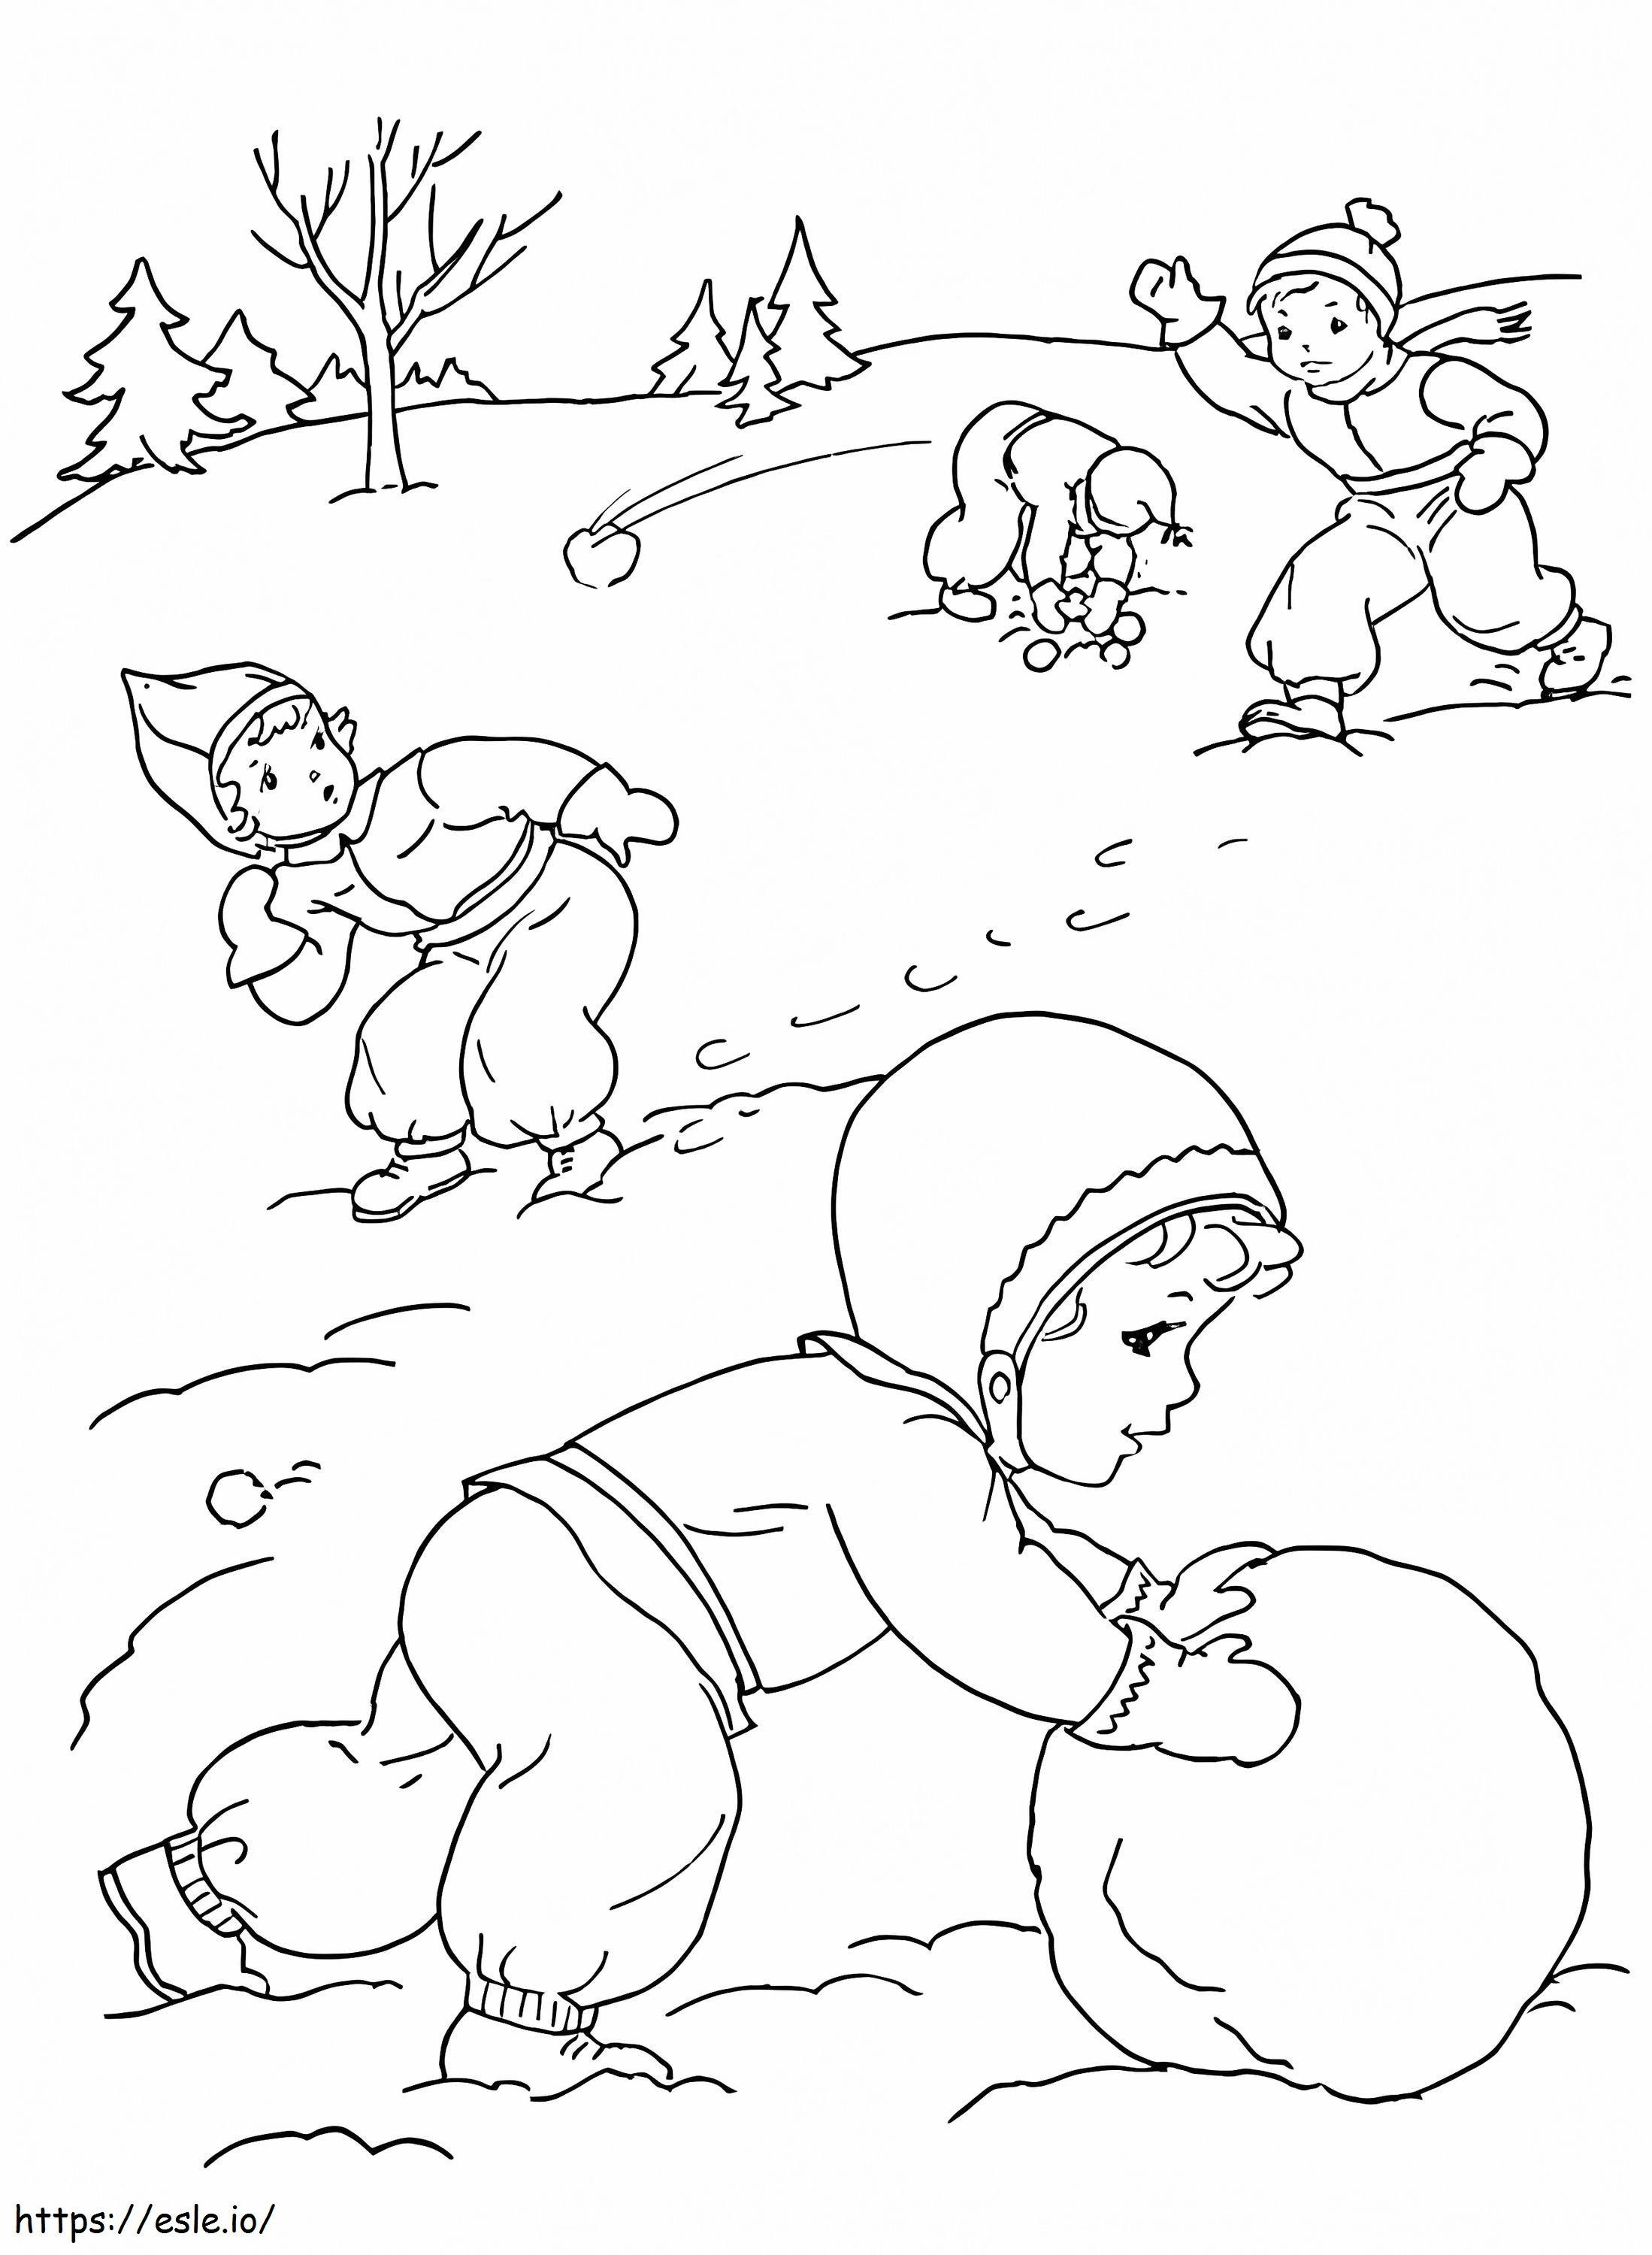 Luta de bolas de neve 1 para colorir